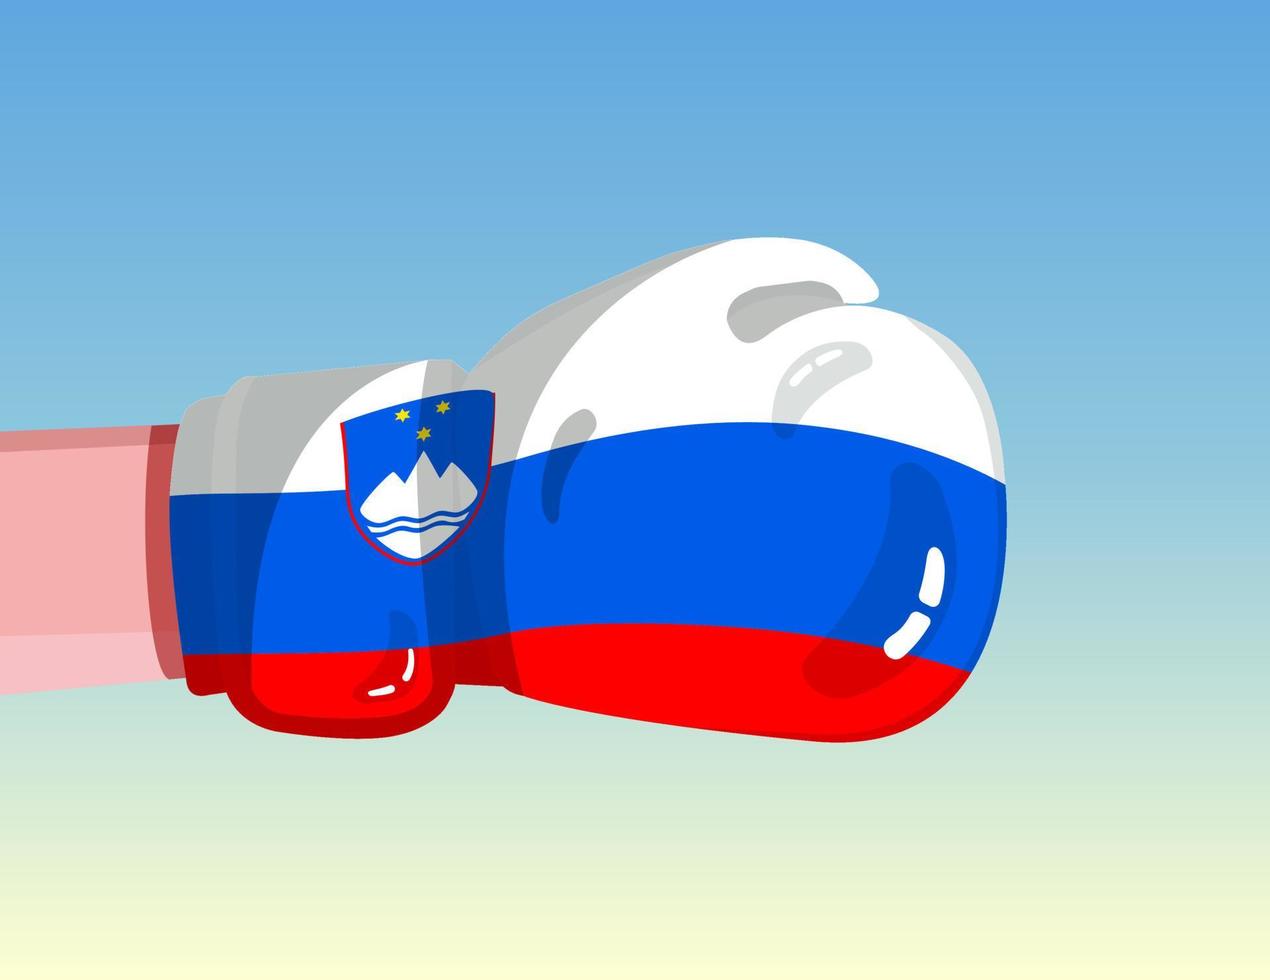 Sloveniens flagga på boxningshandske. konfrontation mellan länder med konkurrenskraft. kränkande attityd. maktdelning. mall redo design. vektor